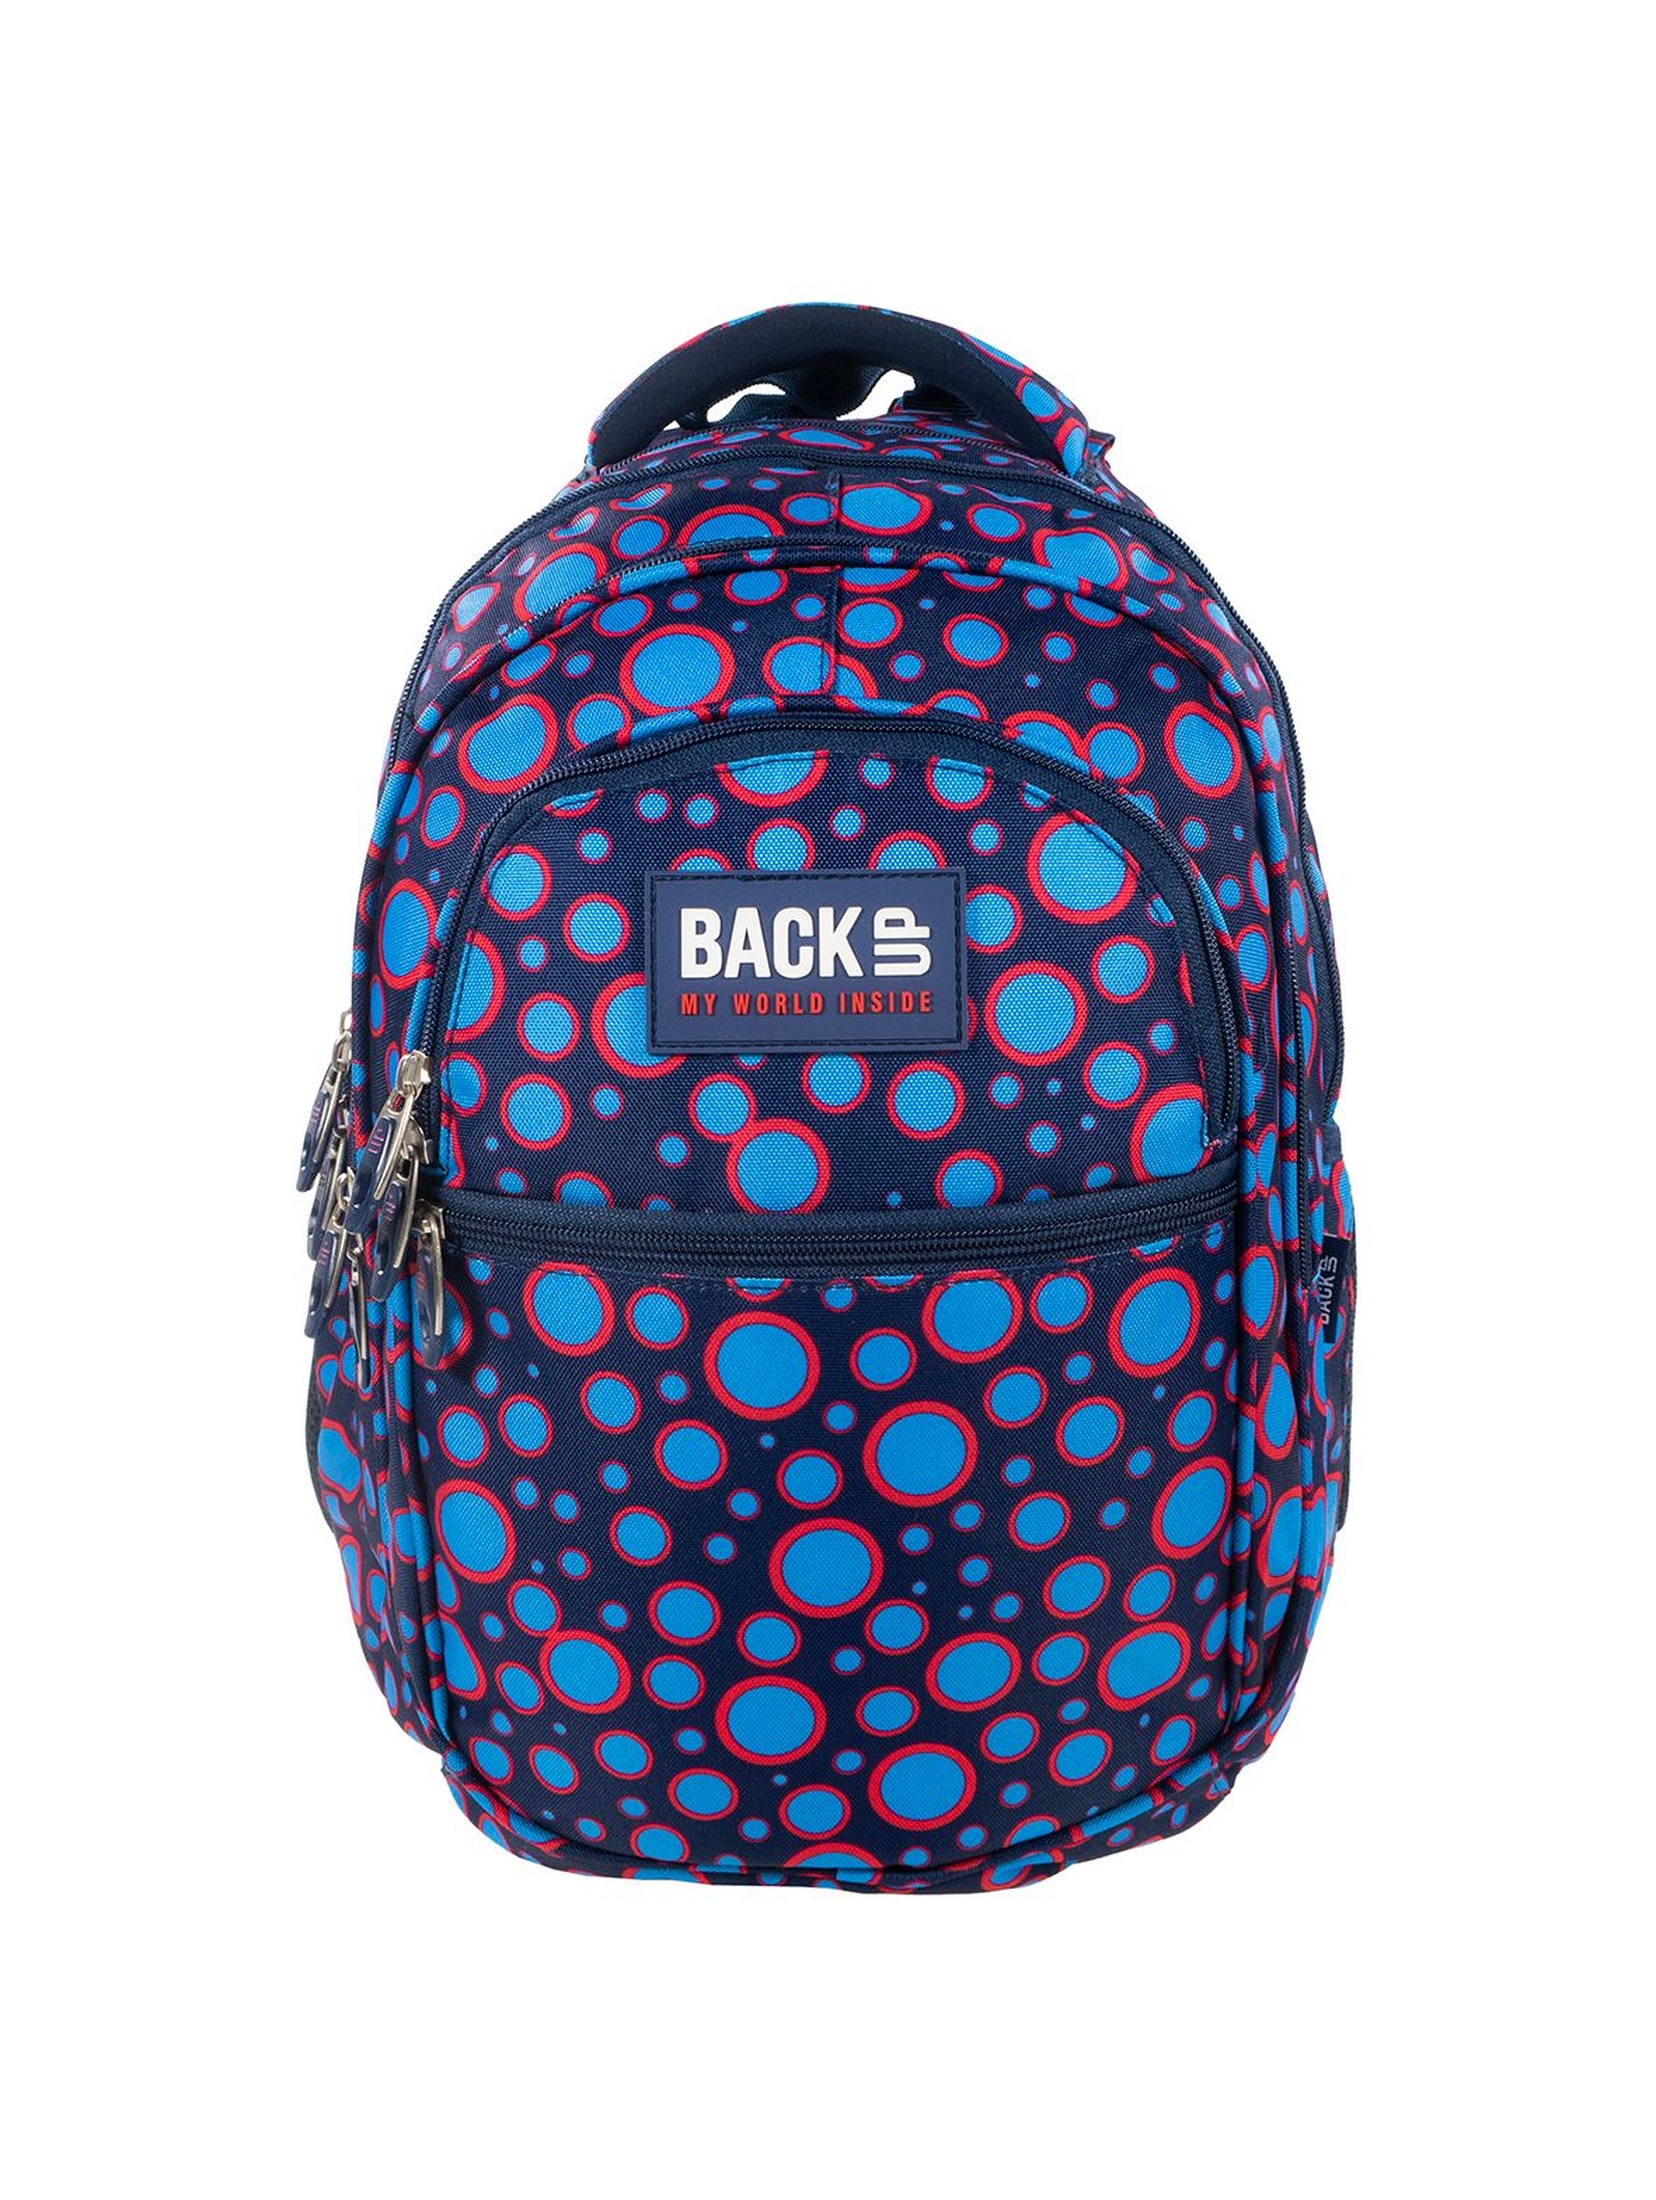 Plecak BackUP +SŁUCHAWKI kolorowy wzór geometryczny